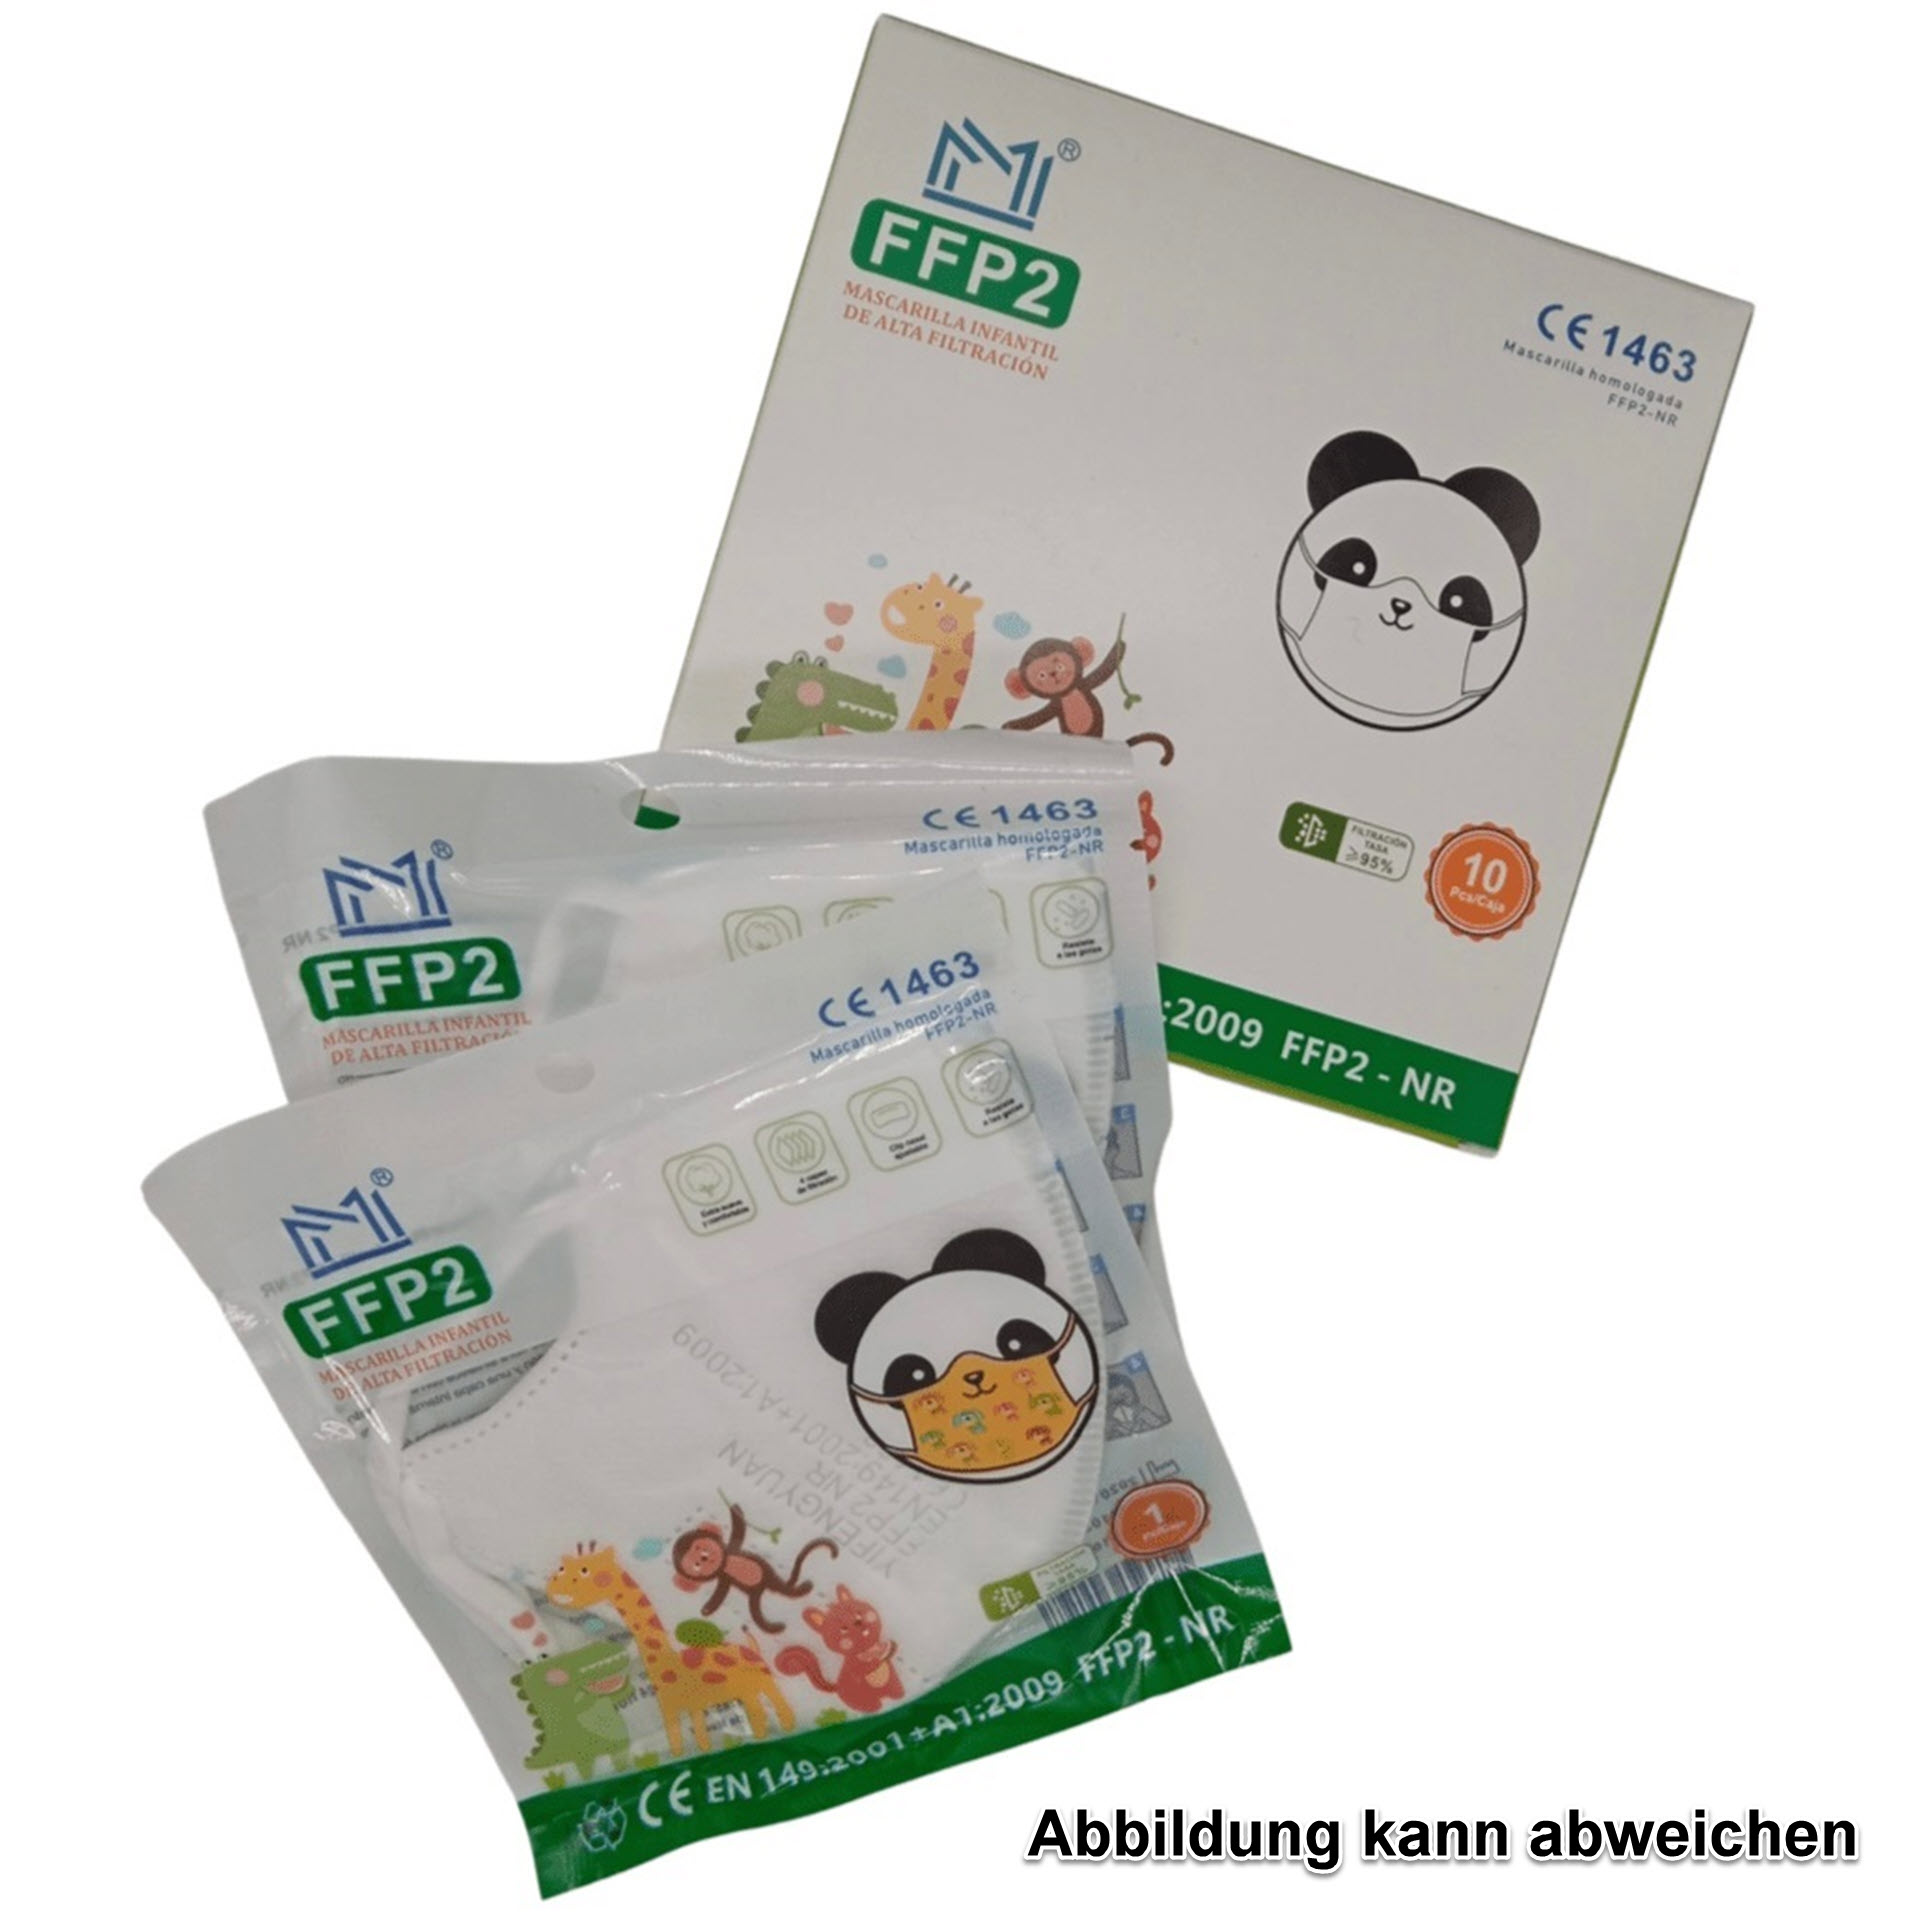 Kinder-Atemschutzmaske - FFP2 NR Schutzklasse - mit buntem Aufdrucken (CE 1463 / EN:149:2001+A1:2009)